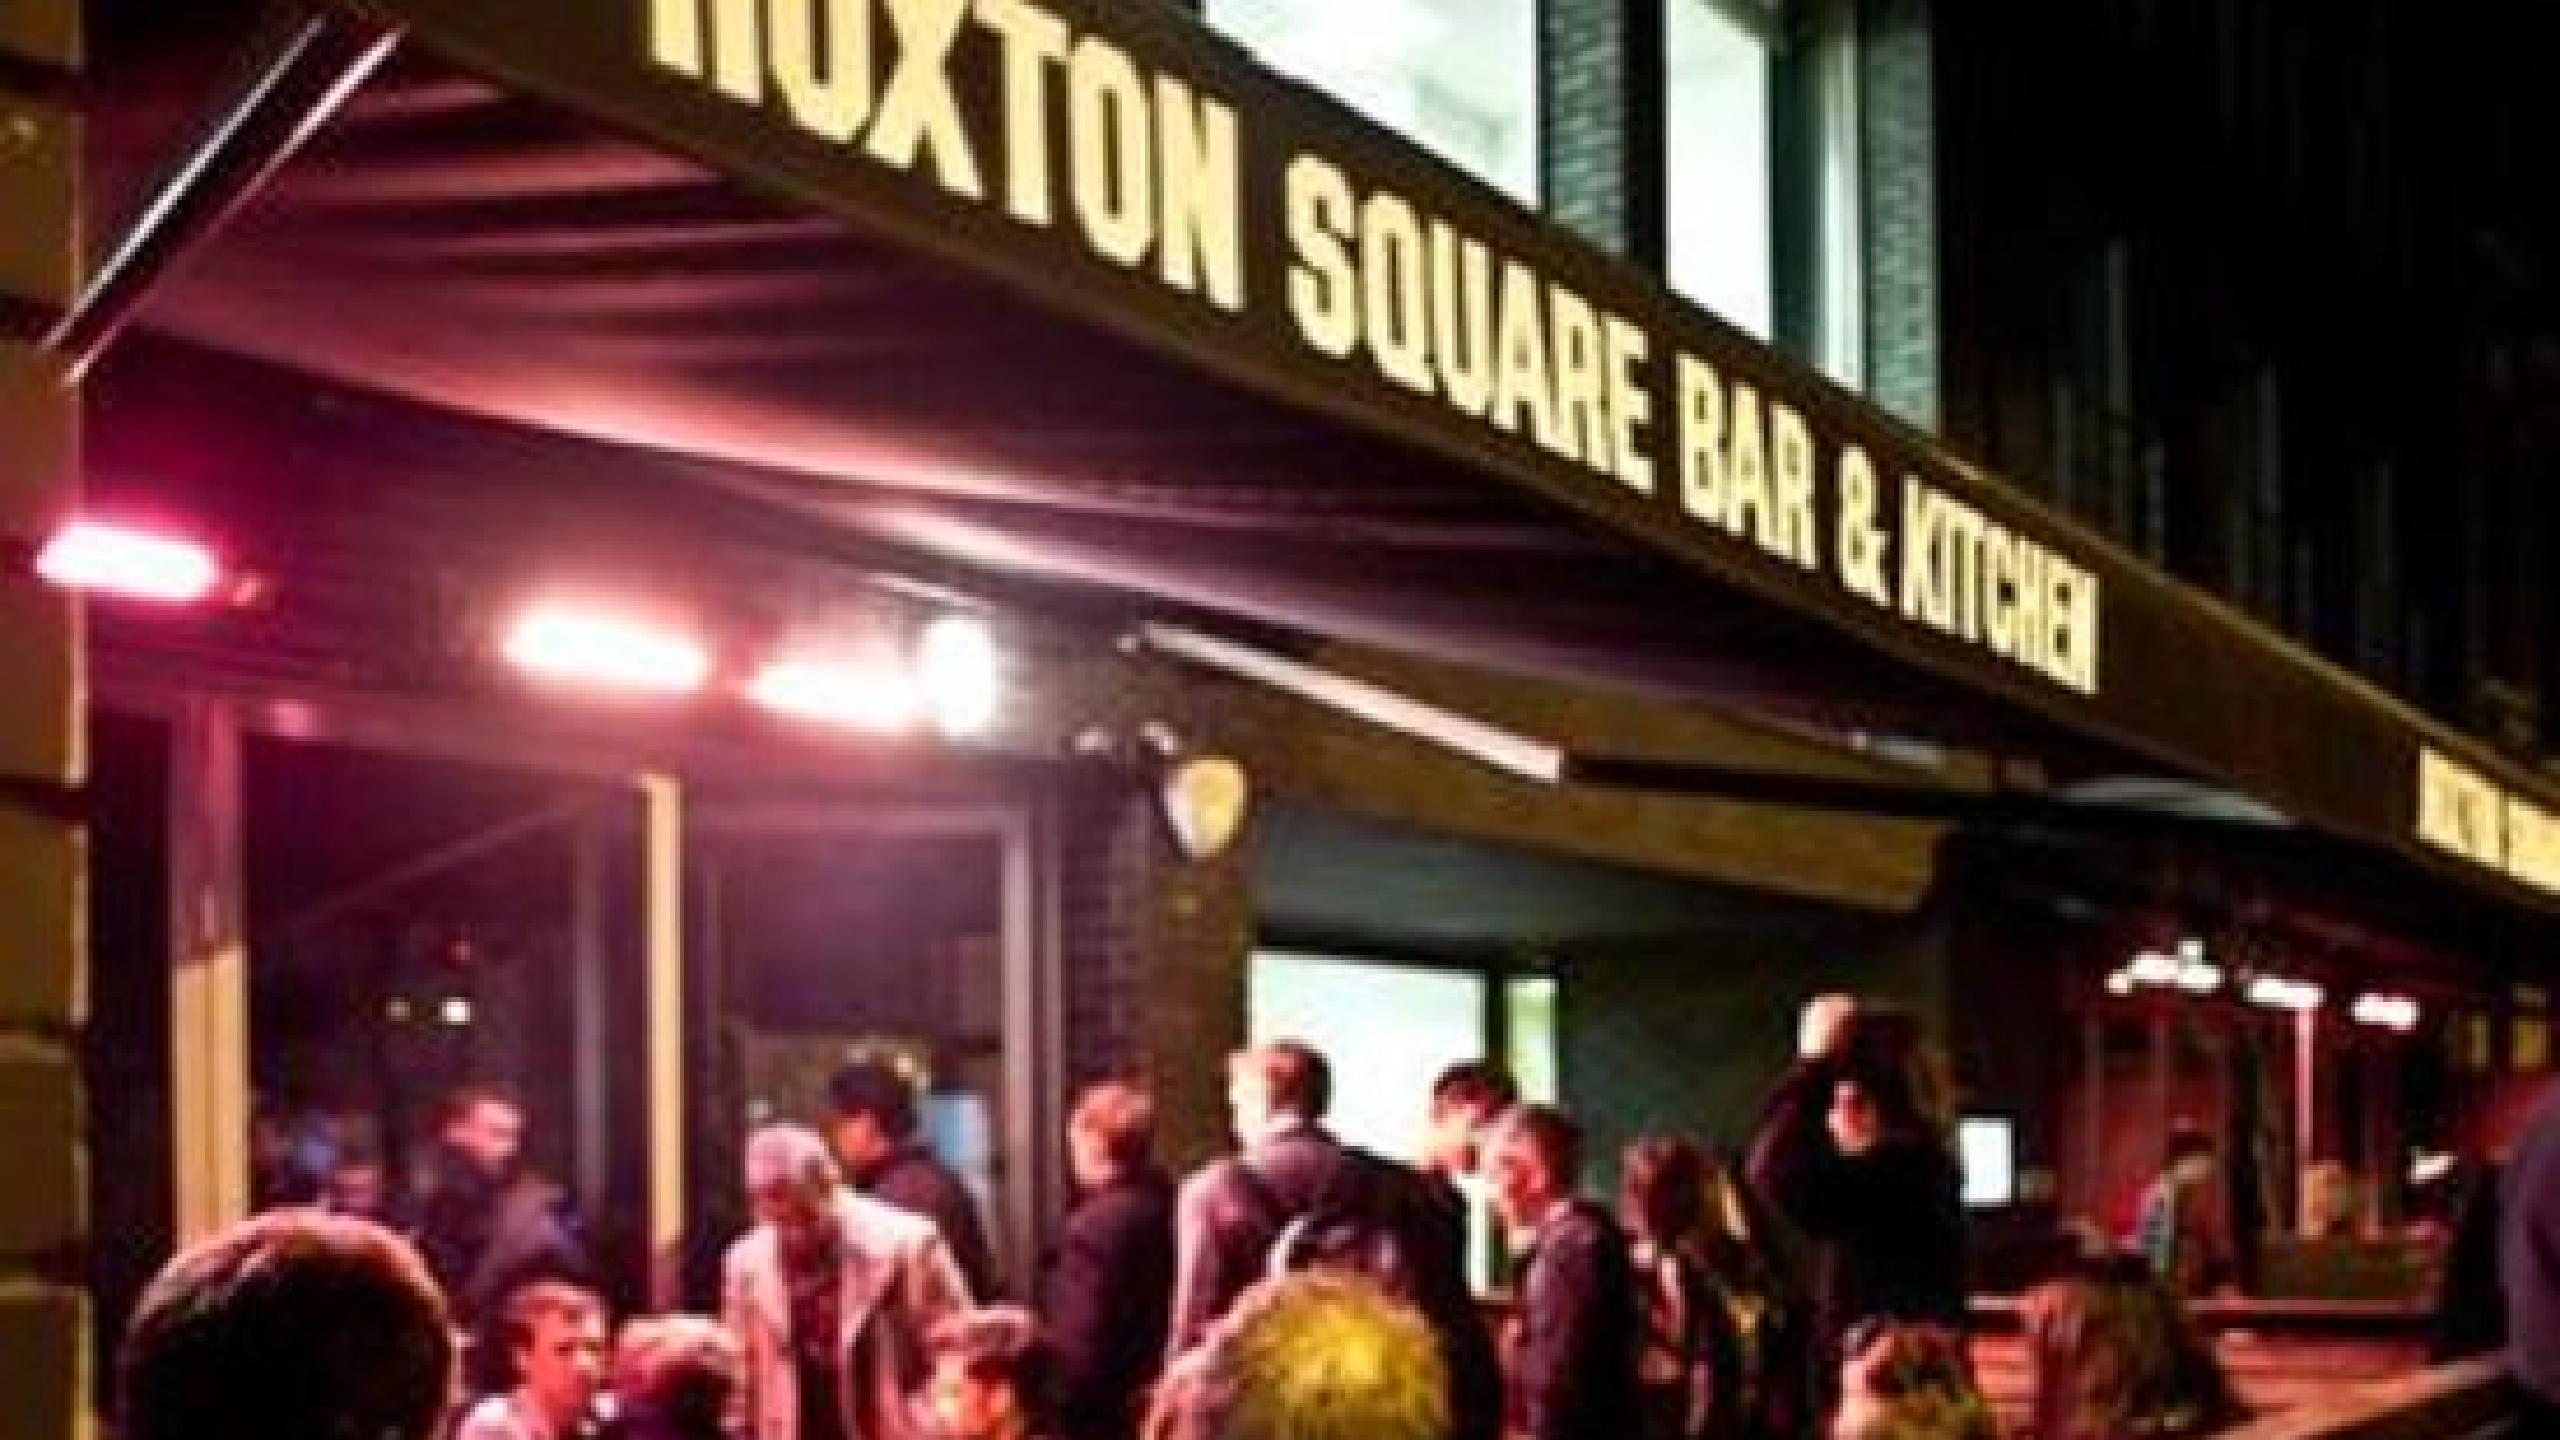 hoxton square bar and kitchen capacity